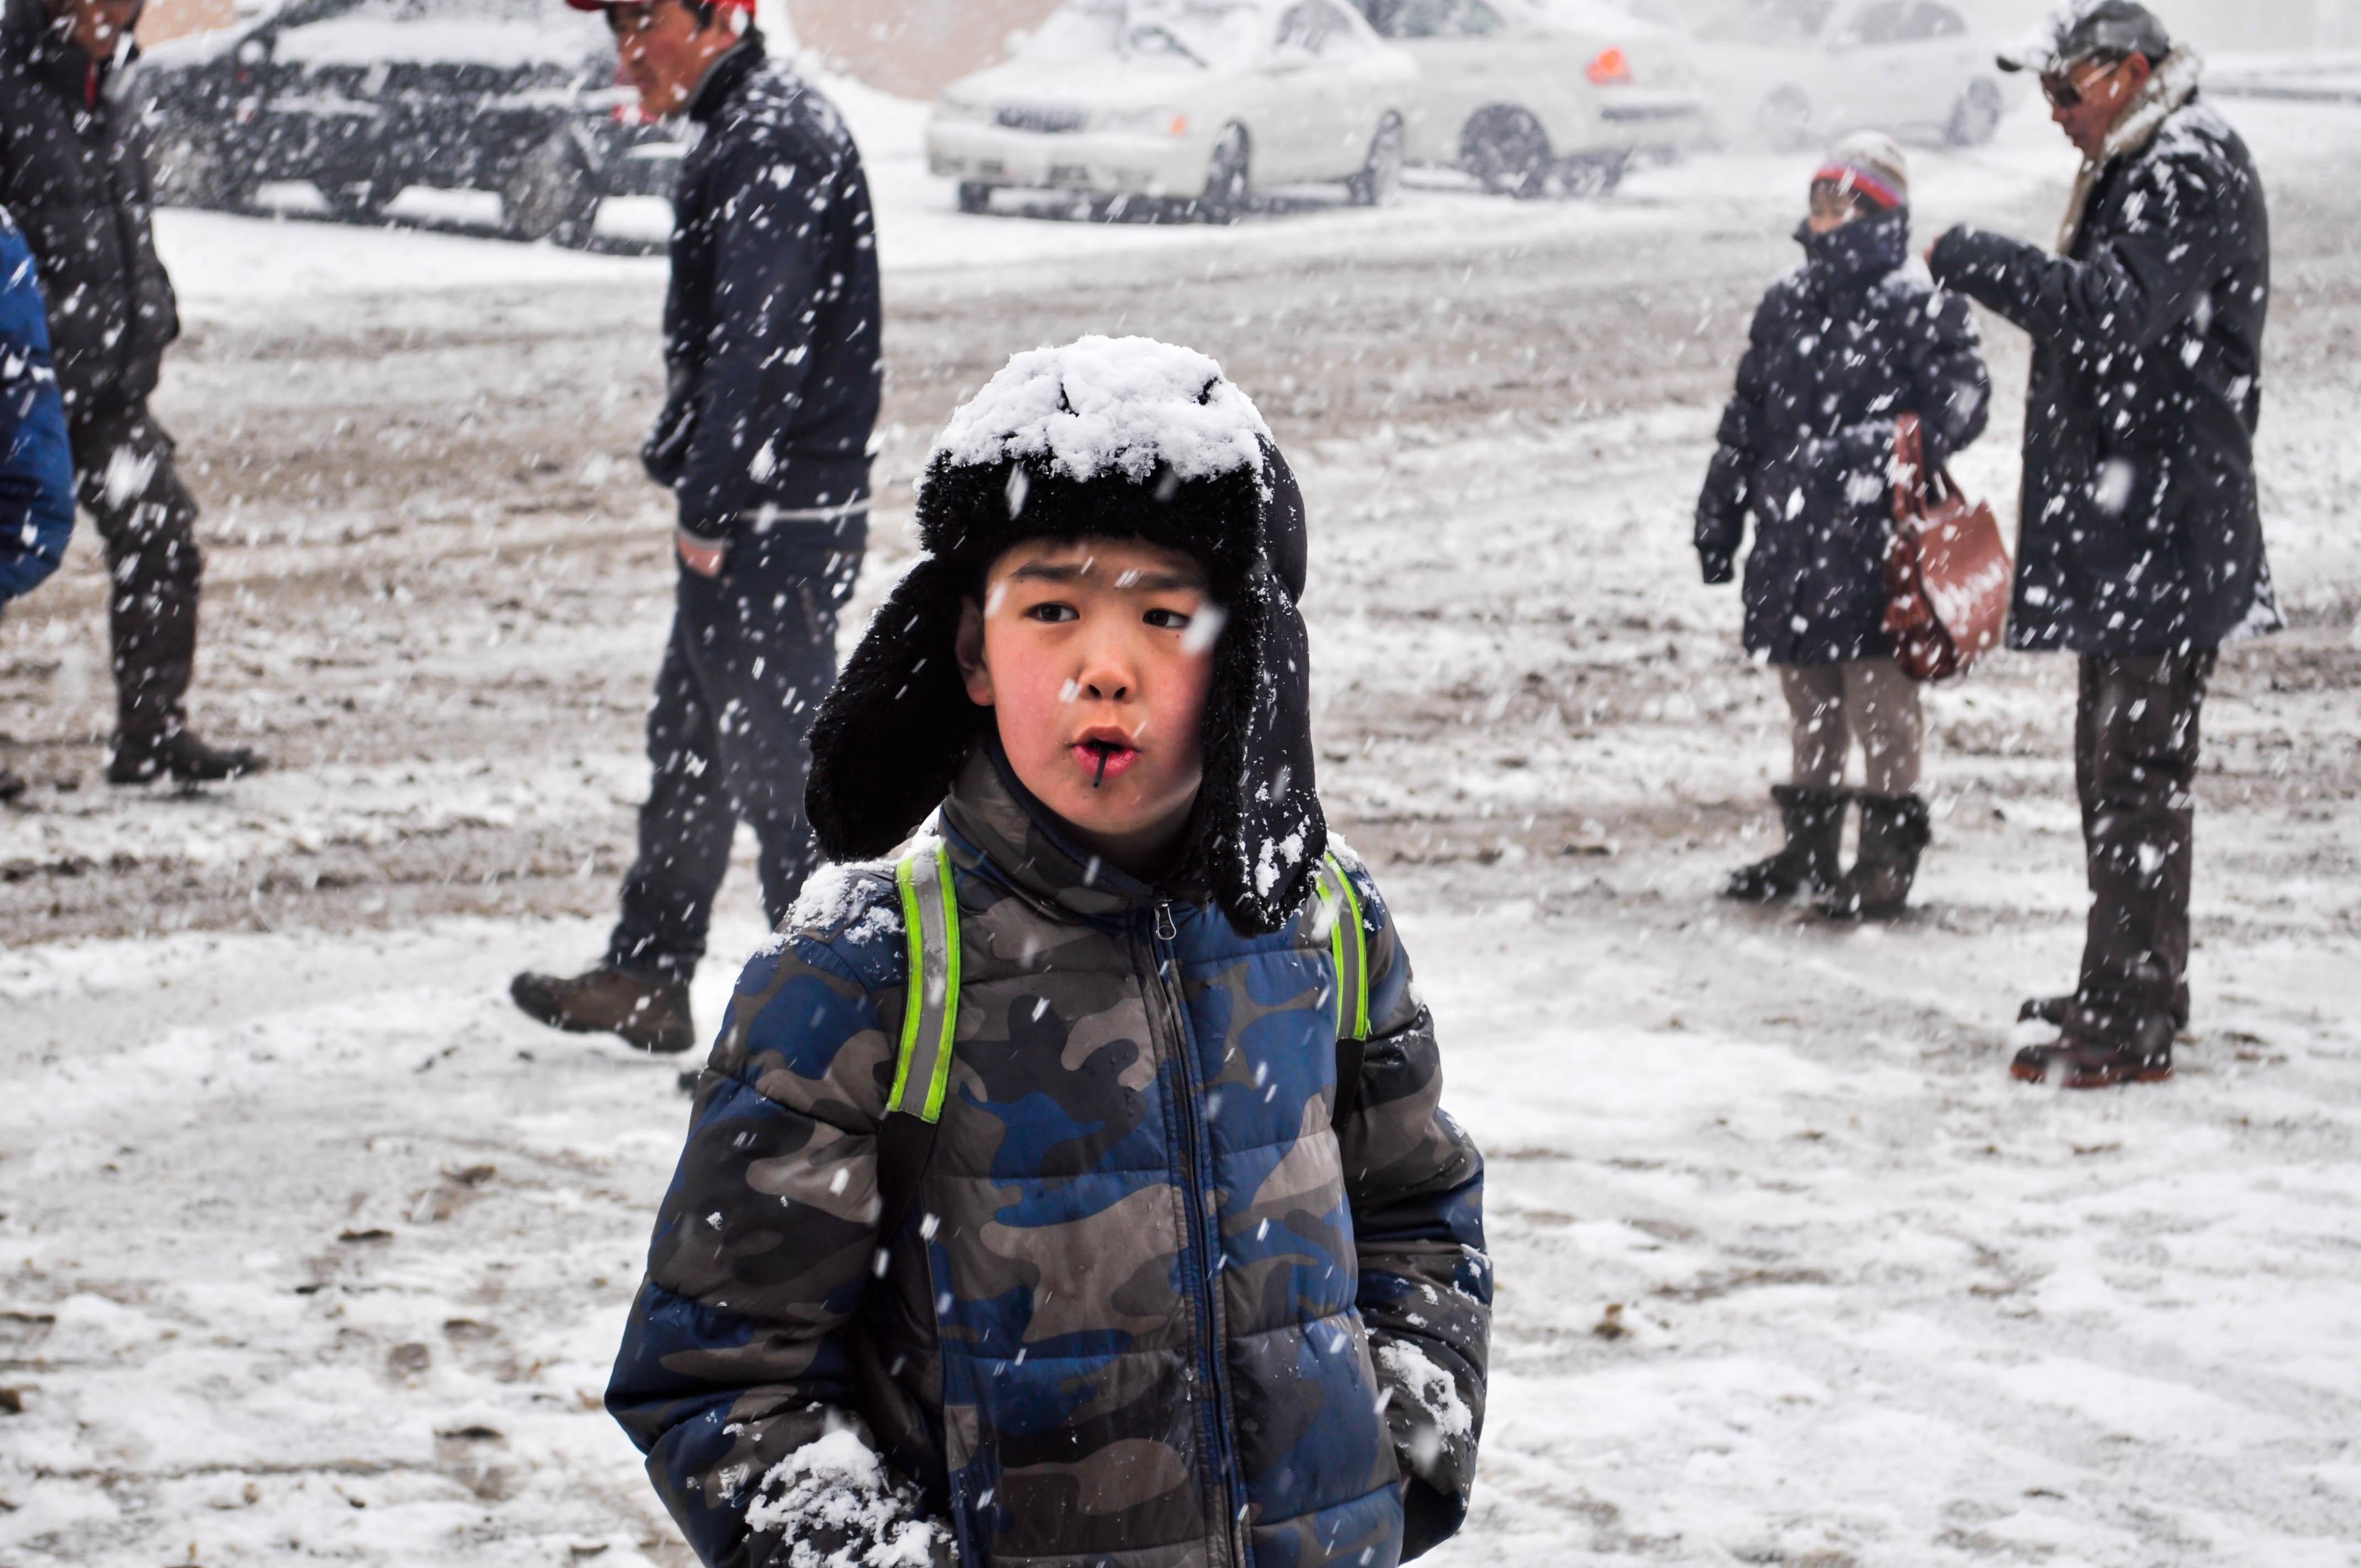 Метеоролог: Календарная зима через неделю закончится, но морозы не уйдут -  Российская газета